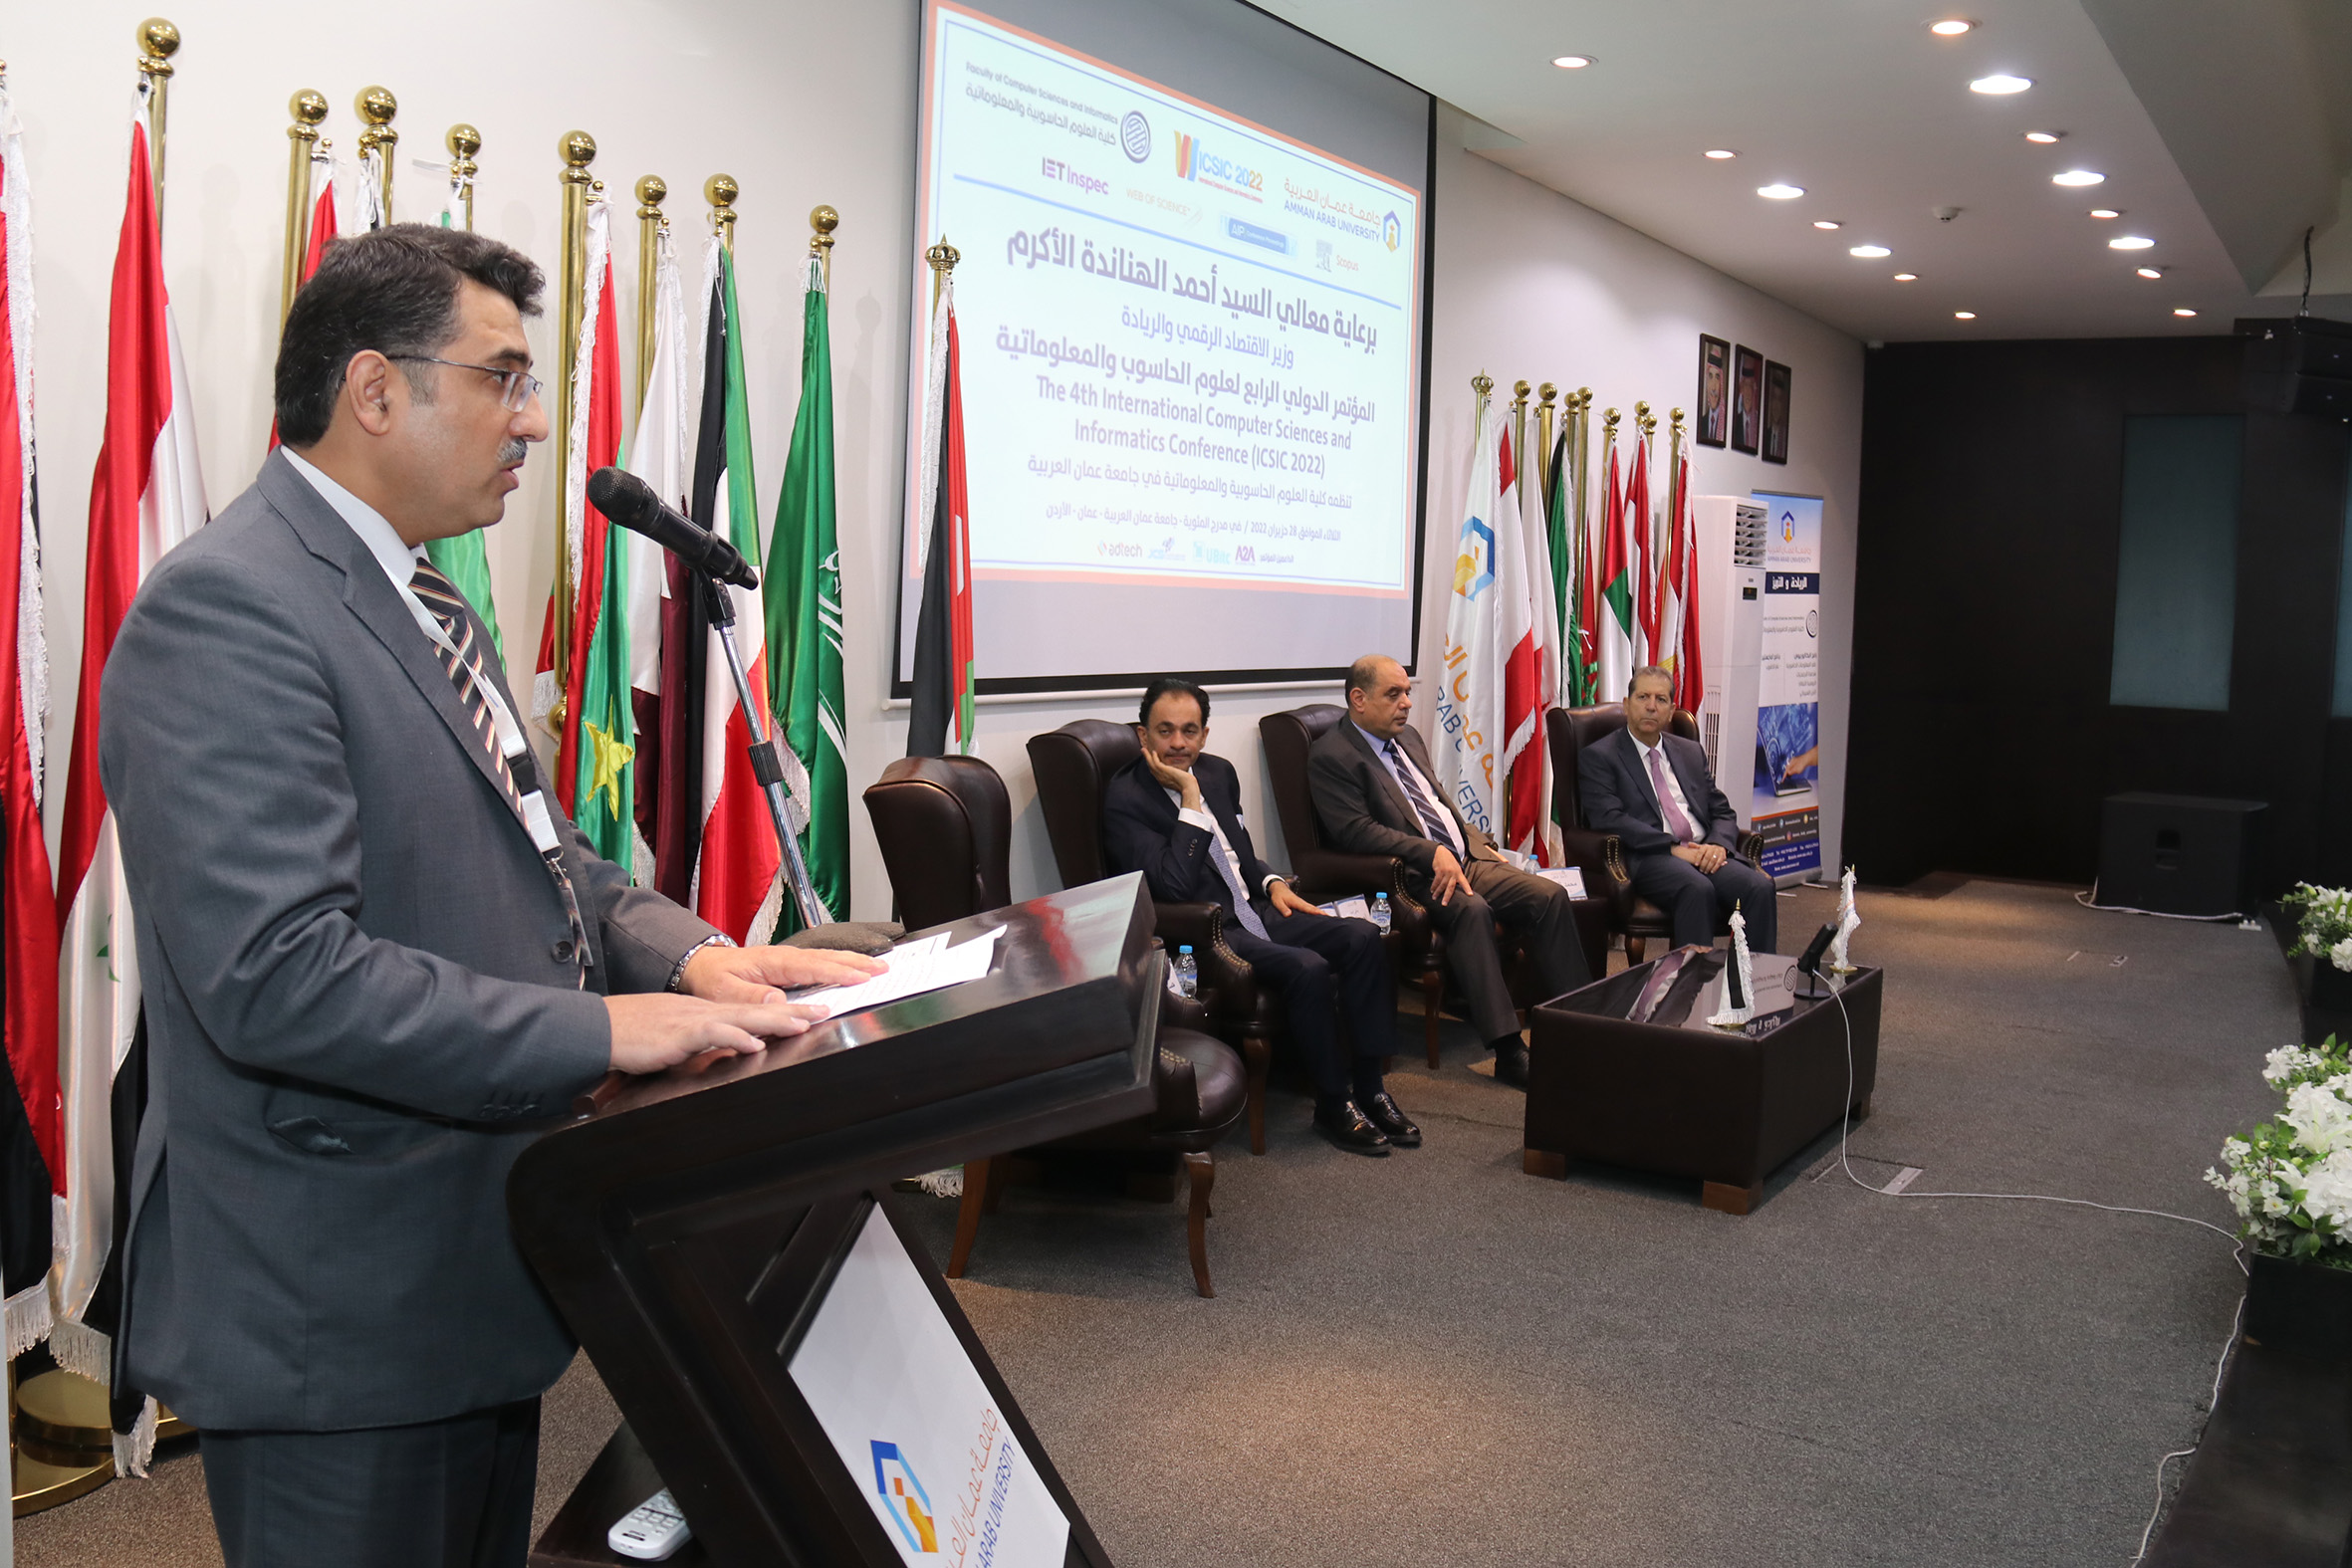 الهناندة يرعى افتتاح فعاليات المؤتمر الدولي الرابع في العلوم الحاسوبية والمعلوماتية في "عمان العربية"7